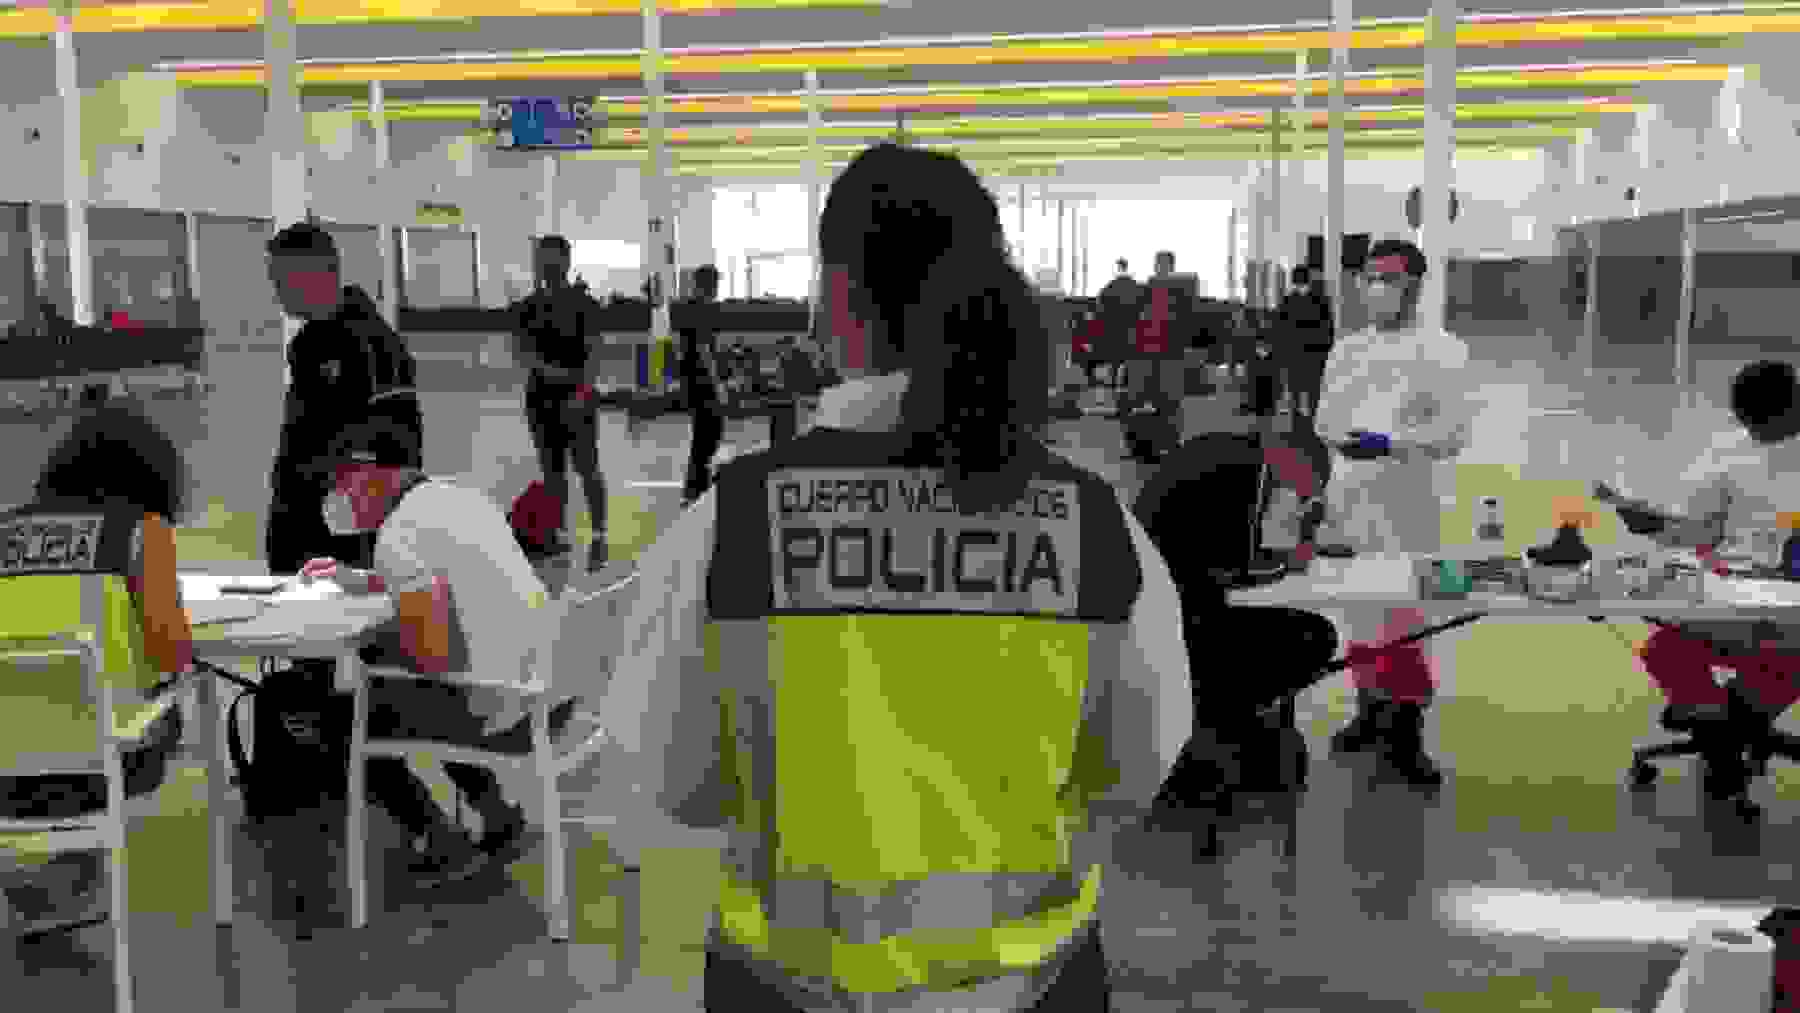 La Policía custodiando a inmigrantes llegados en patera a Baleares.